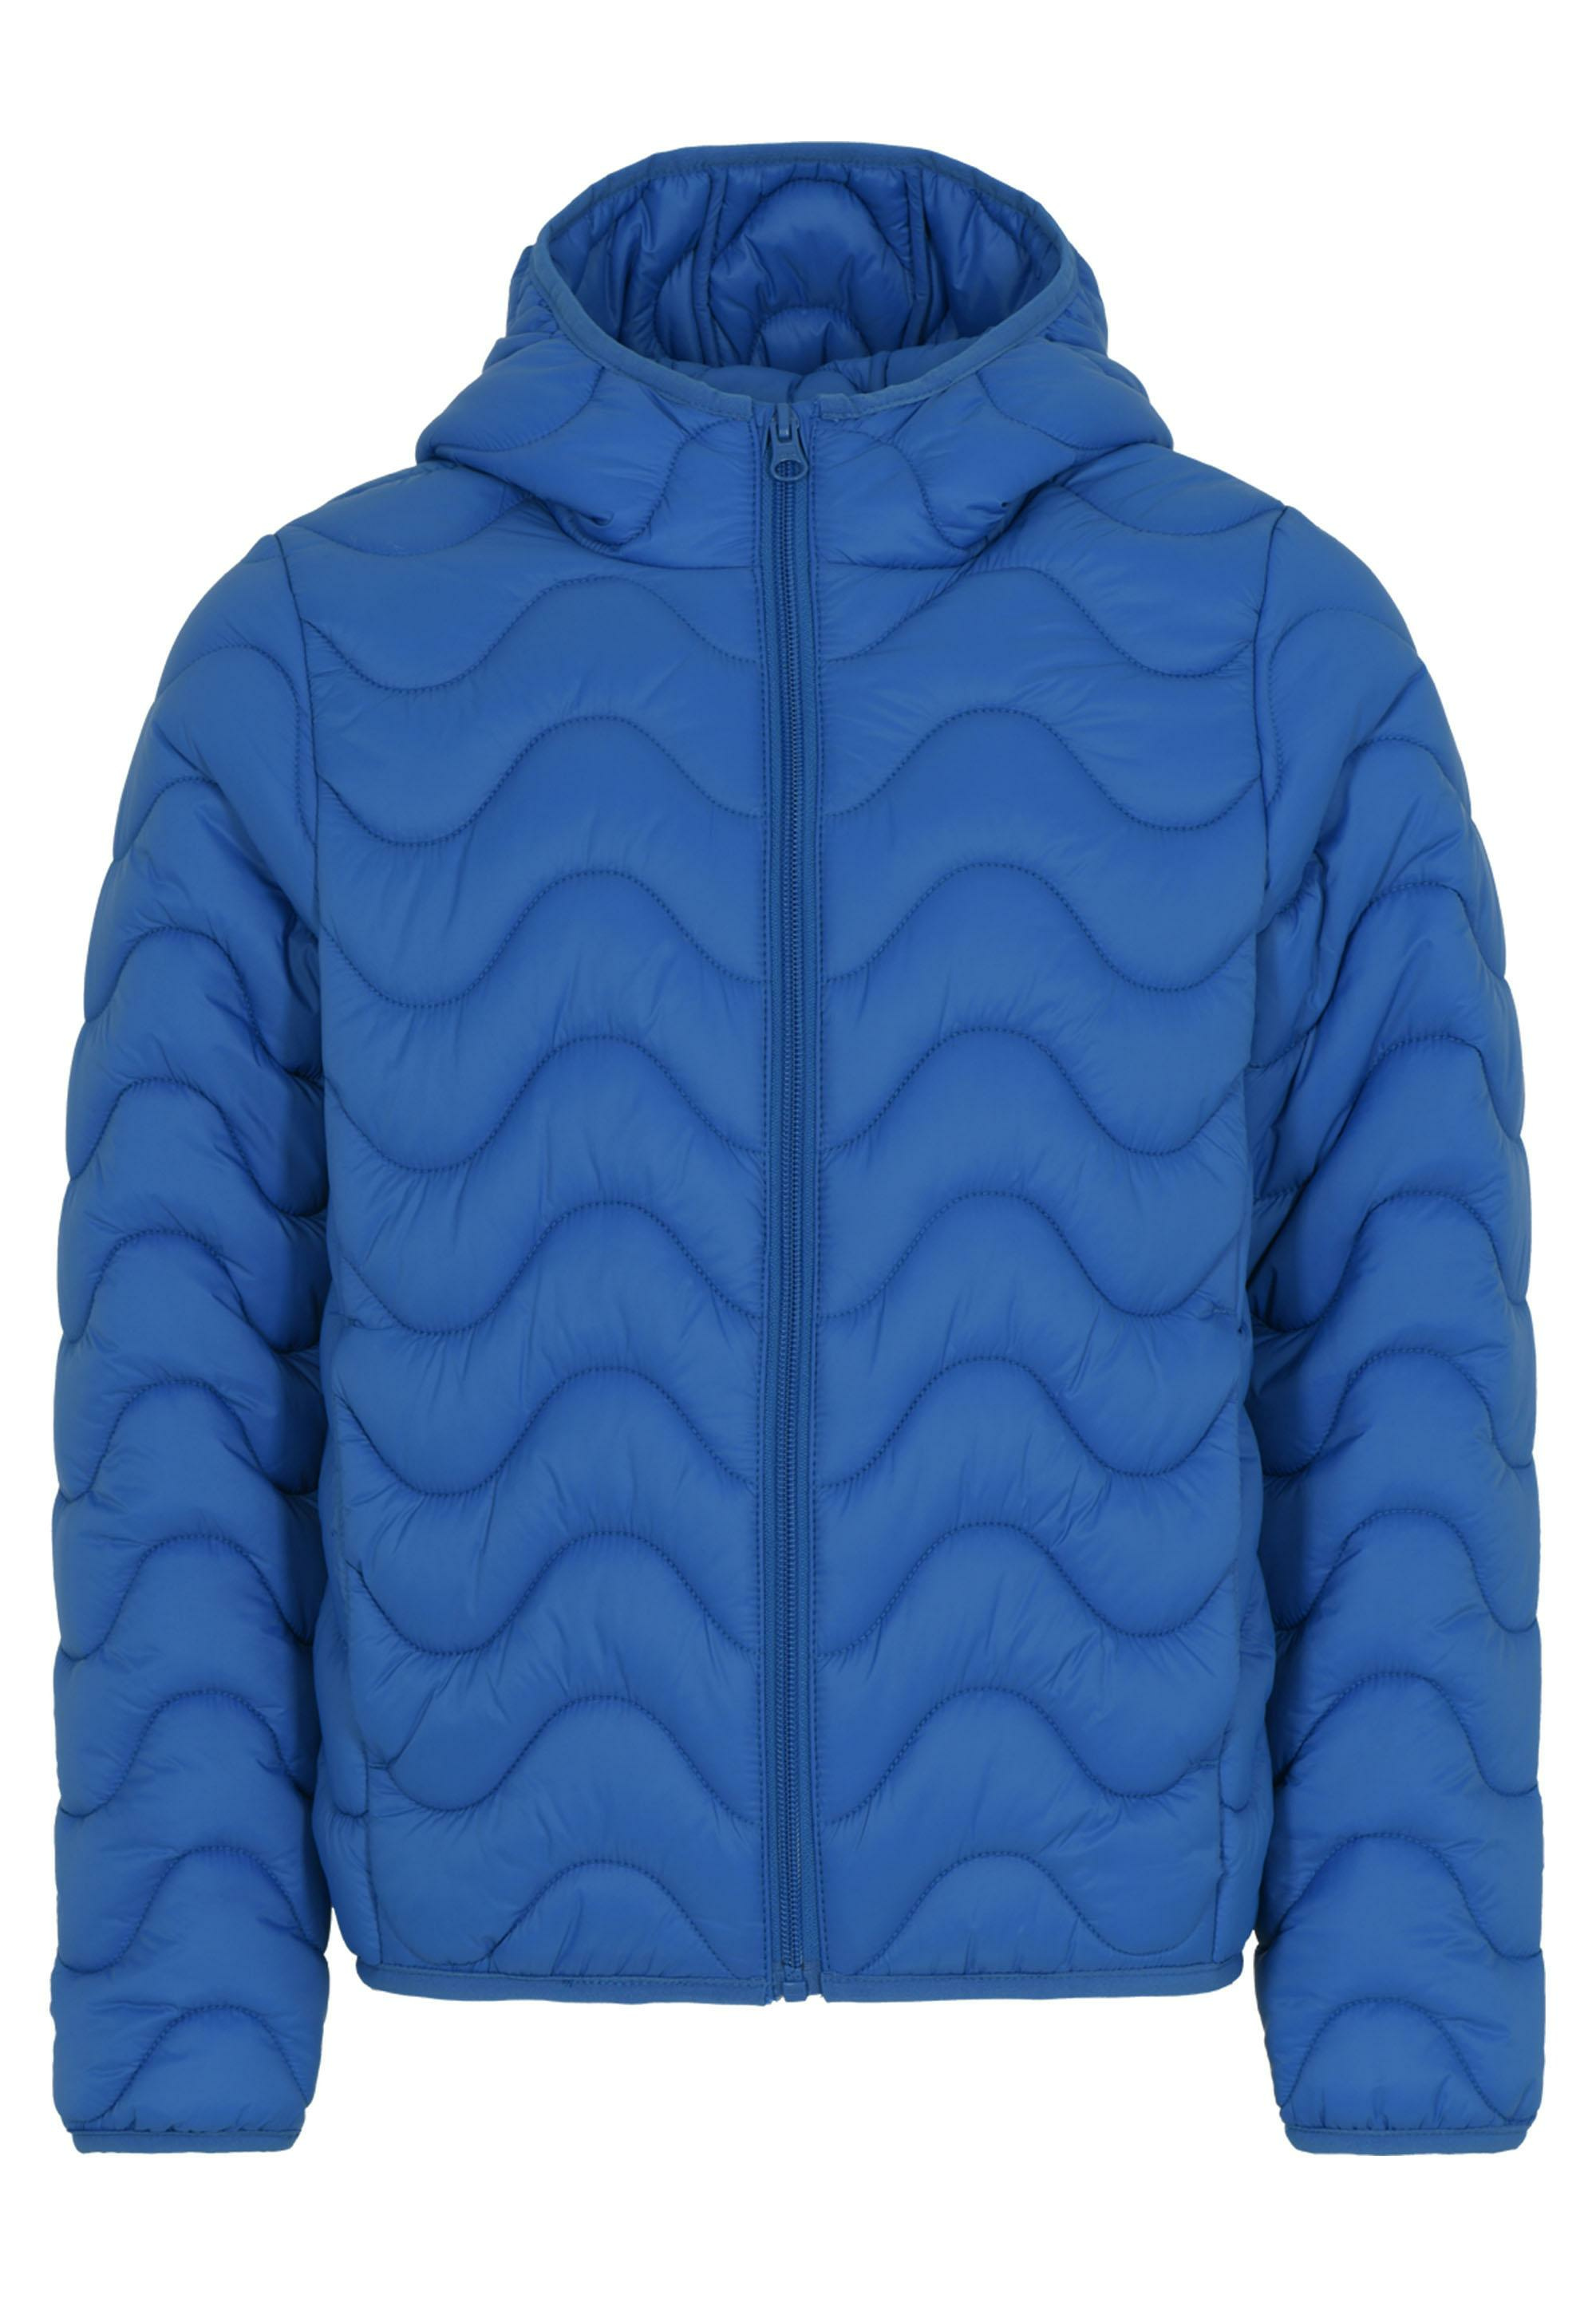 Функциональная куртка KABOOKI Steppjacke KBJAMIE 100, цвет Middle Blue oracal 8500 f005 middle blue 1 26x50 м